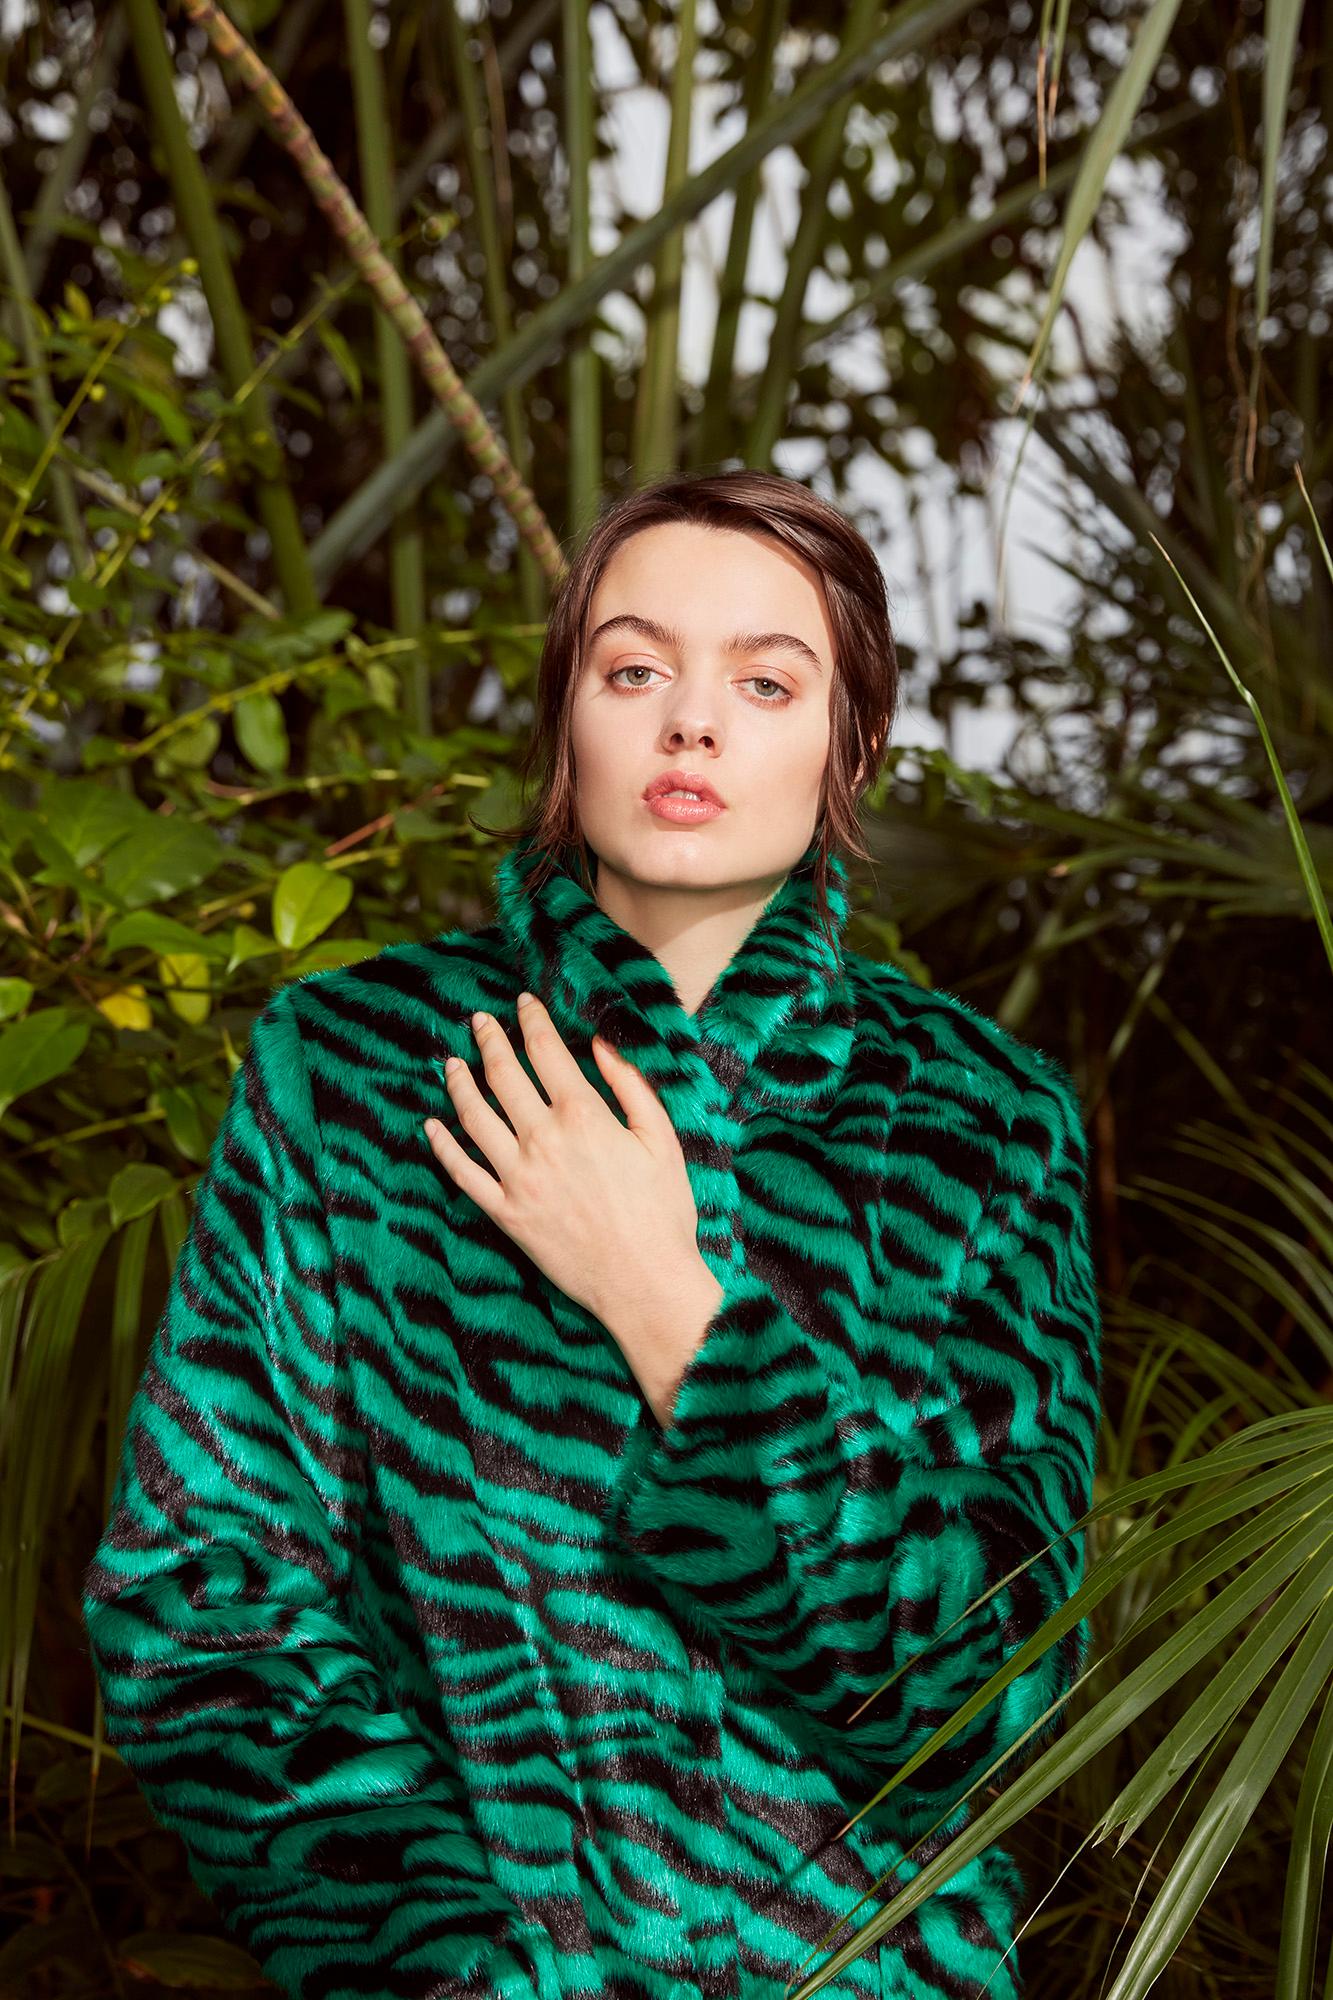 Verheyen London Esmeralda Faux Fur Coat in Emerald Green Zebra Print size uk 10 For Sale 6